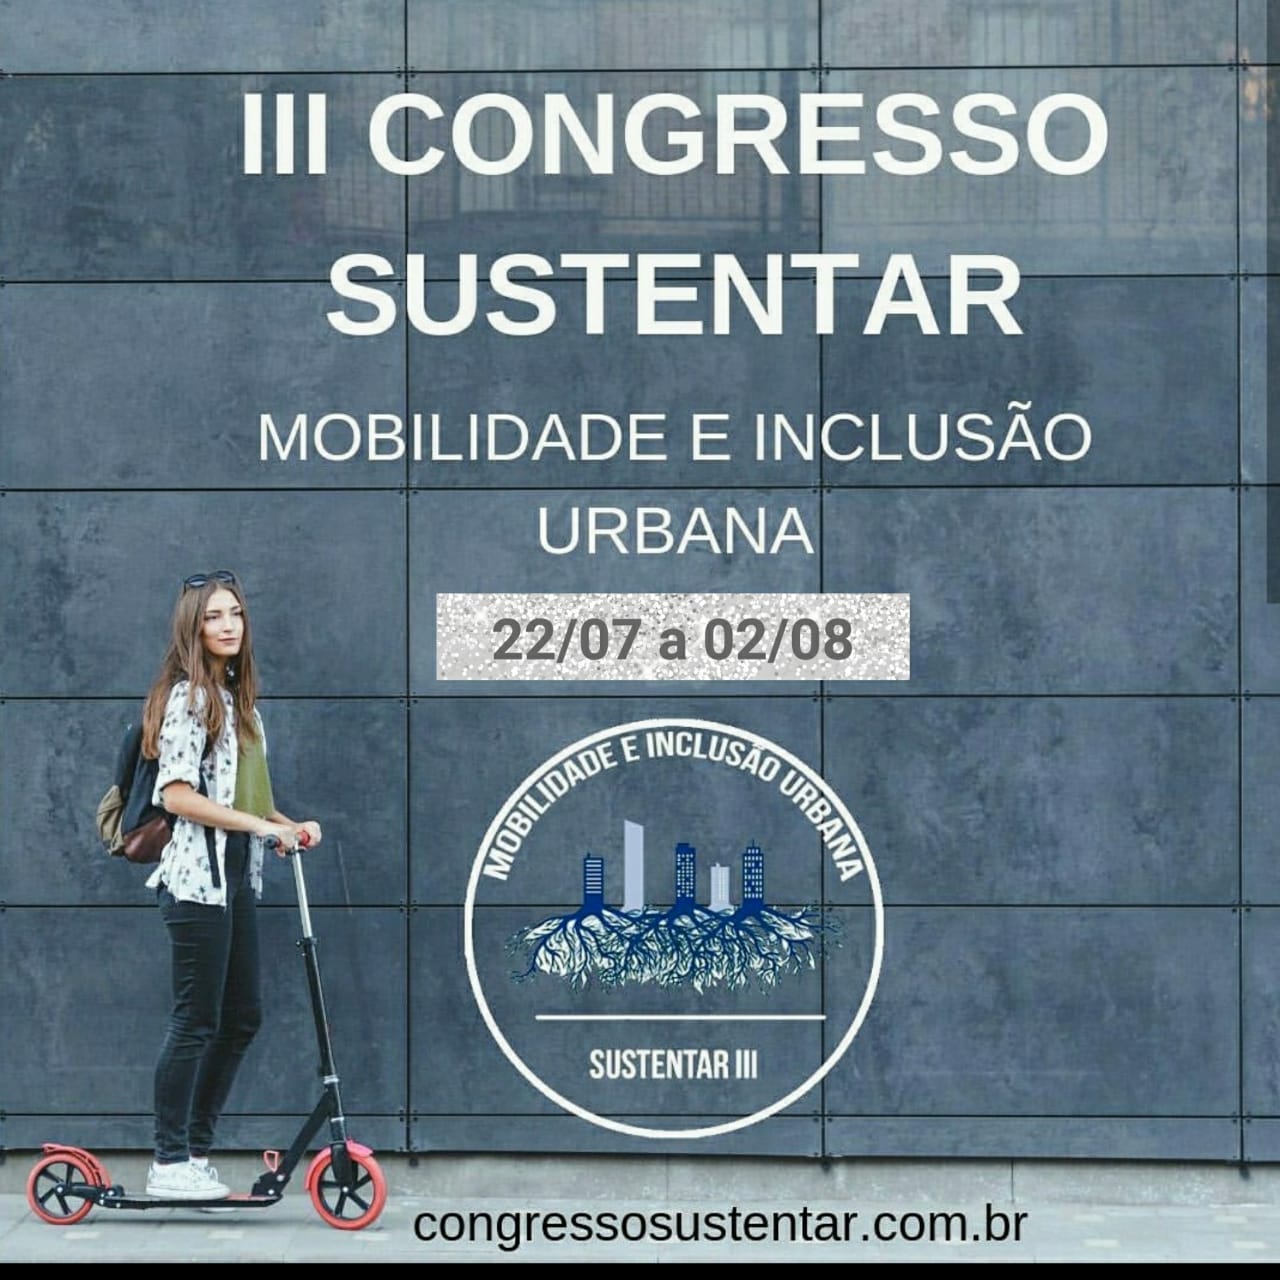  Terceiro Congresso Sustentar debate mobilidade e inclusão urbana